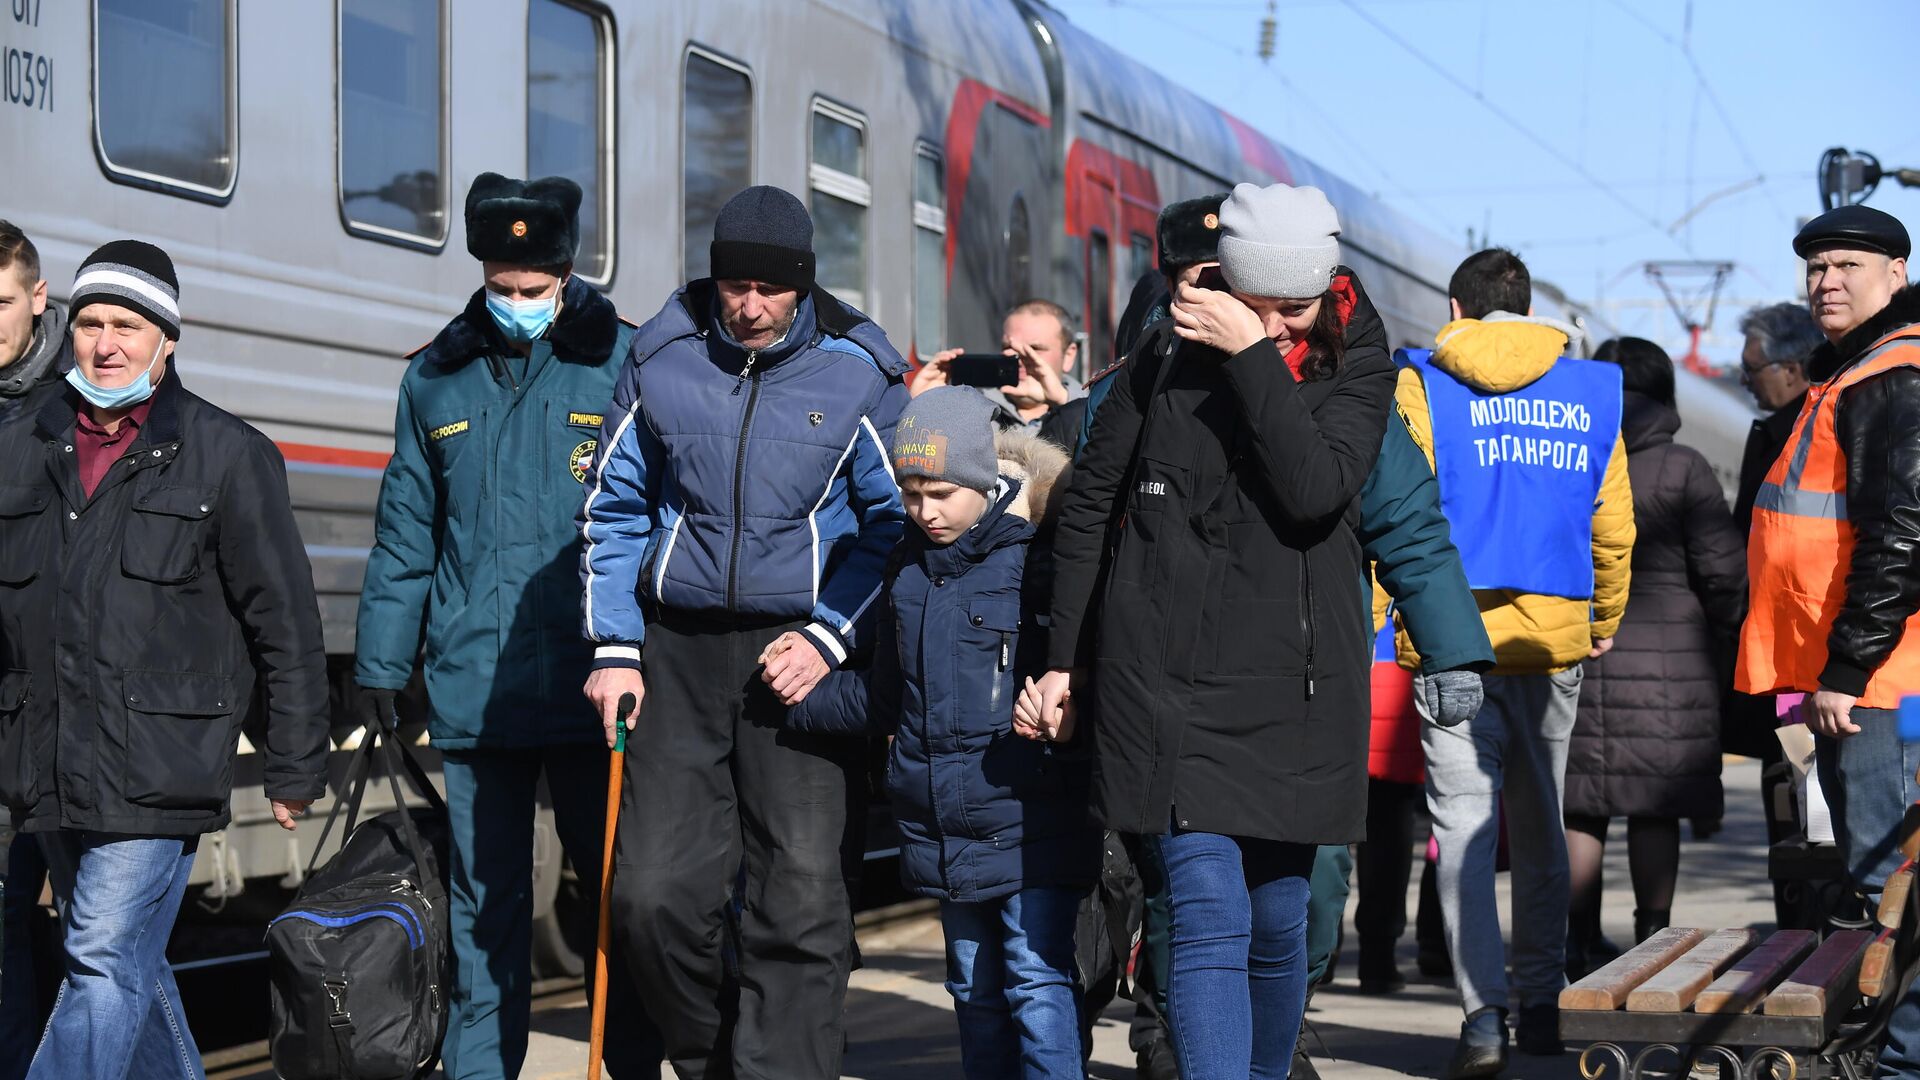 Беженцы из Донбасса во время посадки на поезд - РИА Новости, 1920, 11.04.2022